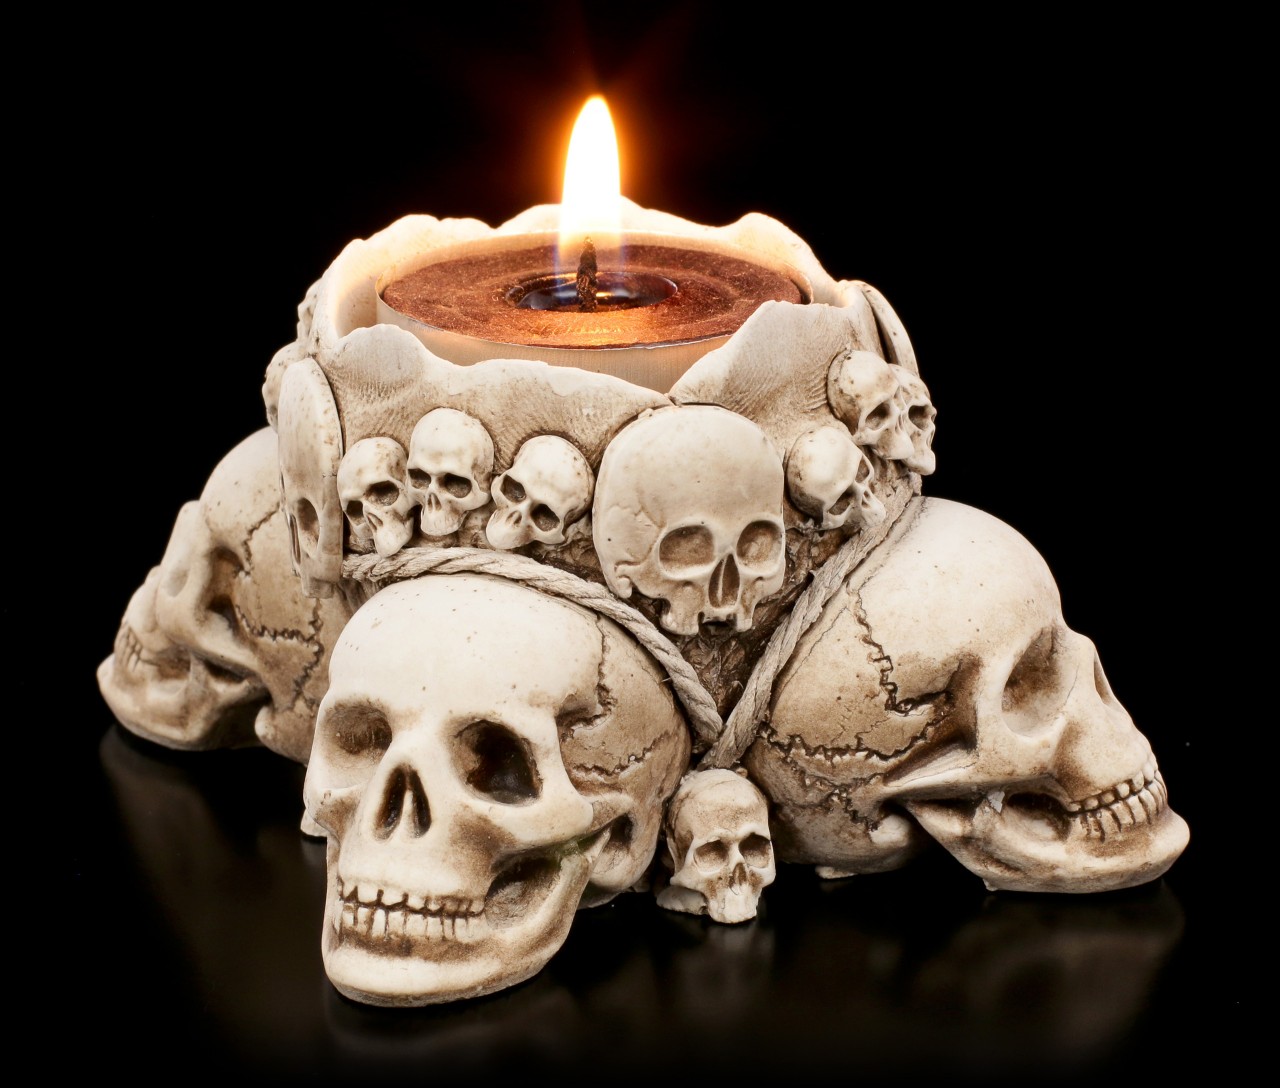 Totenkopf Teelichthalter - Light of Death